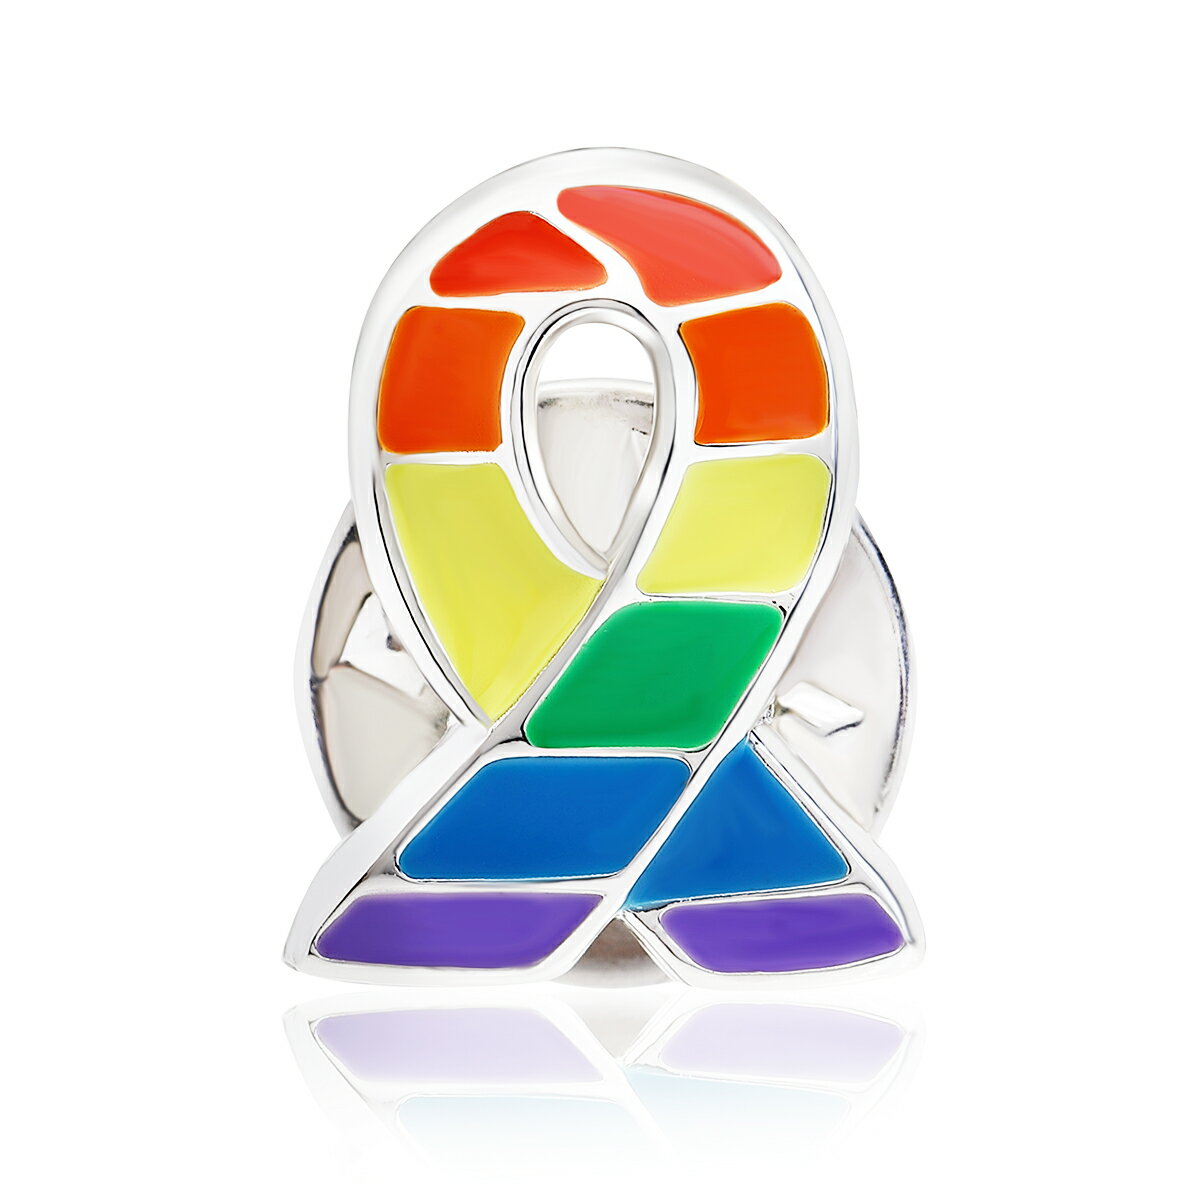 【送料無料】レインボー リボン ピンバッジ 小 LGBT SDGs ゲイ レズ プライド 性的少数者 アウェアネス ピンバッチ ピンバッヂ